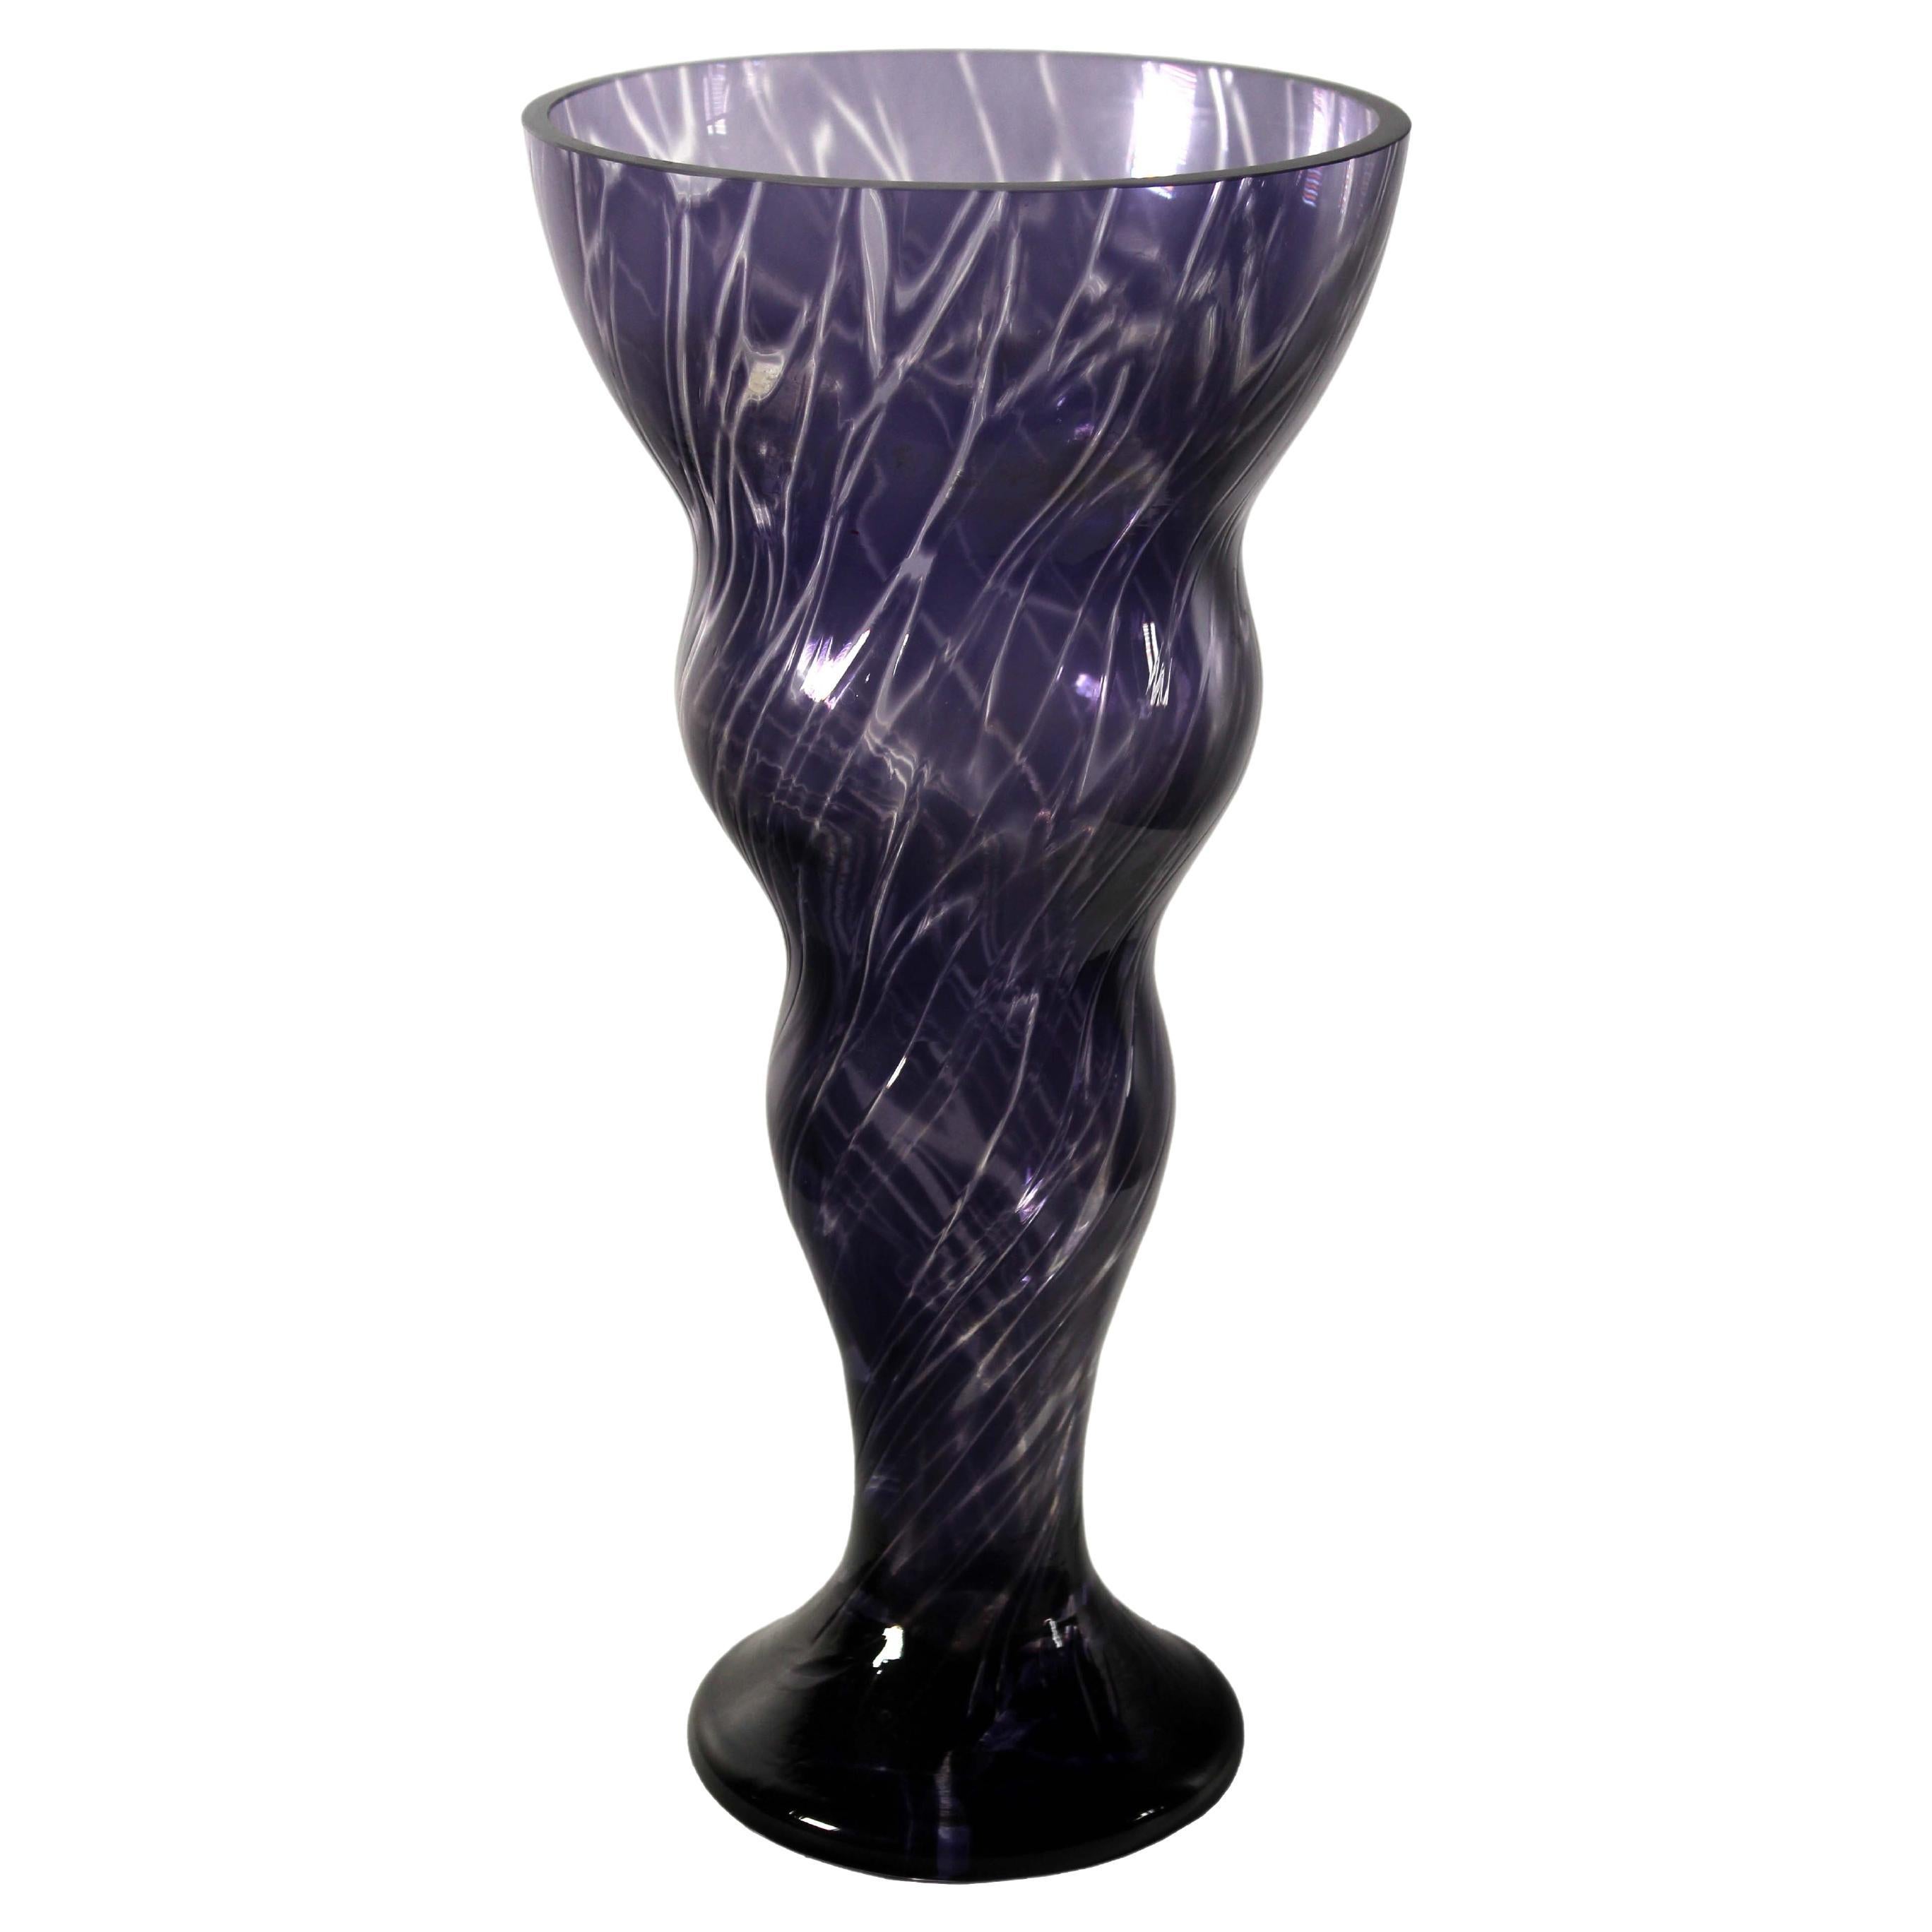 Contemporary Handblown Glass Vase Indigo with Swirl Design